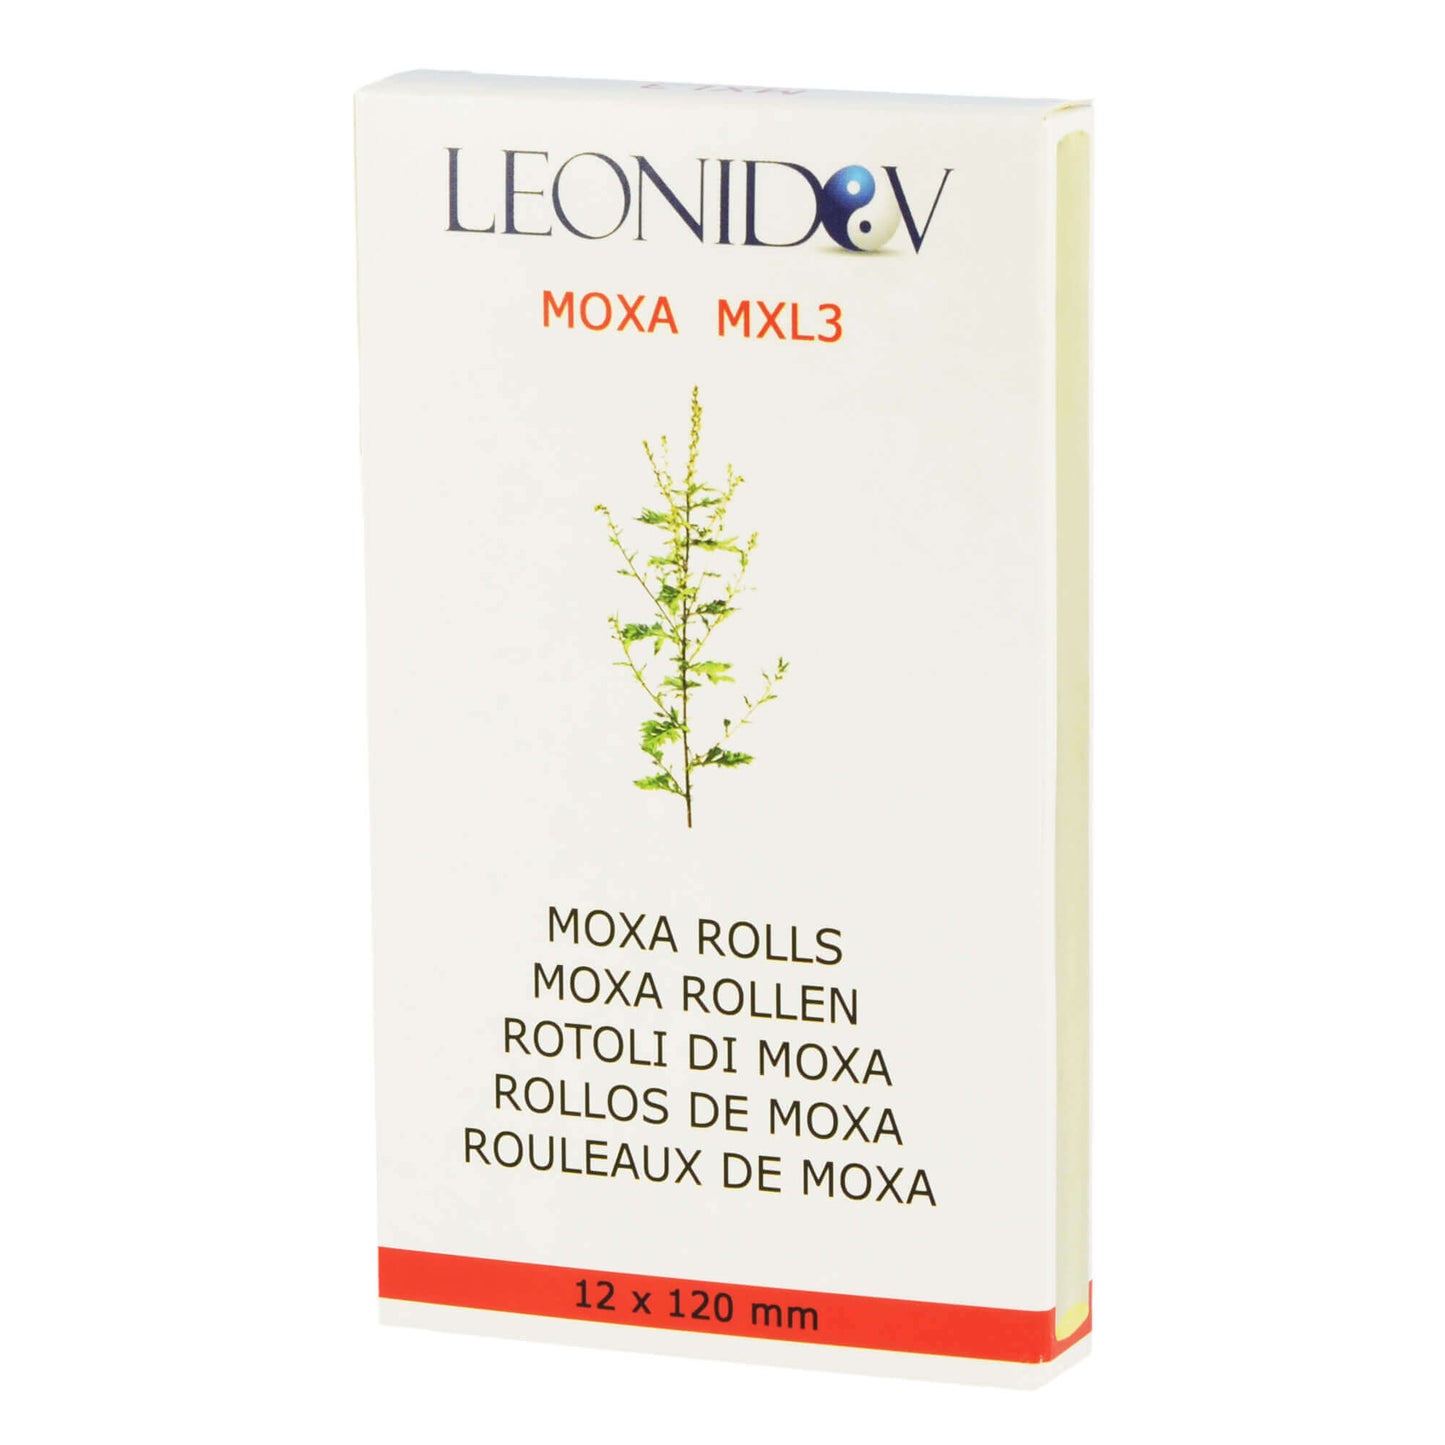 Rouleaux de moxa MXL3 (cigarillo) qualité particulièrement élevée